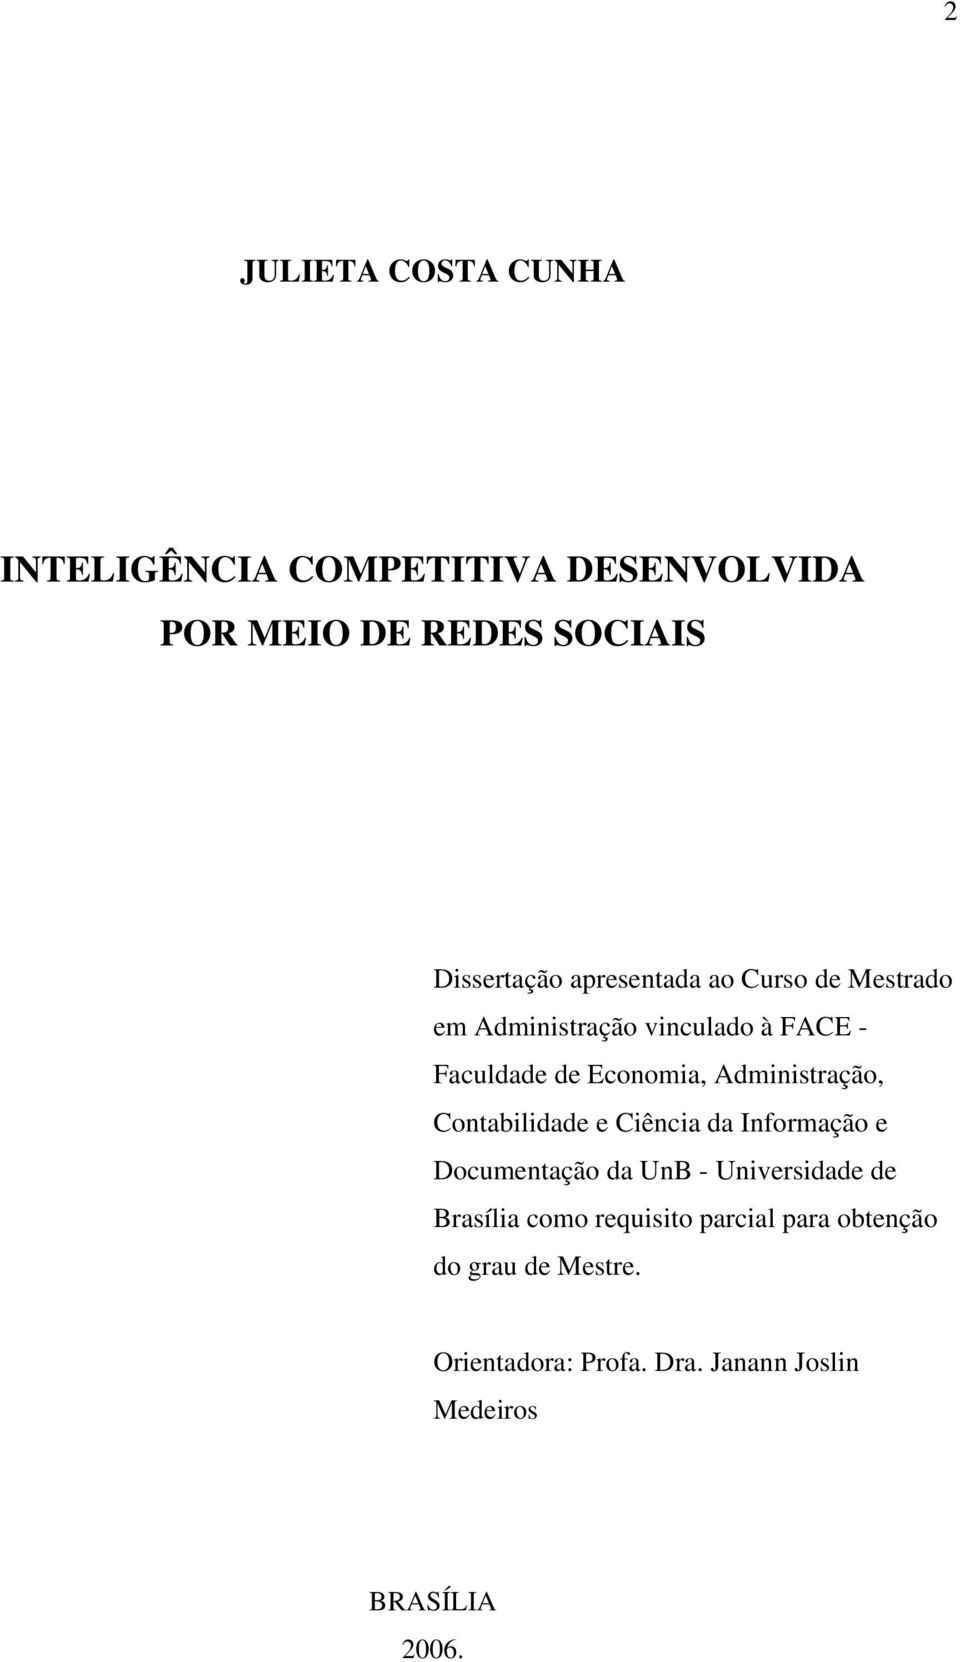 Administração, Contabilidade e Ciência da Informação e Documentação da UnB - Universidade de Brasília